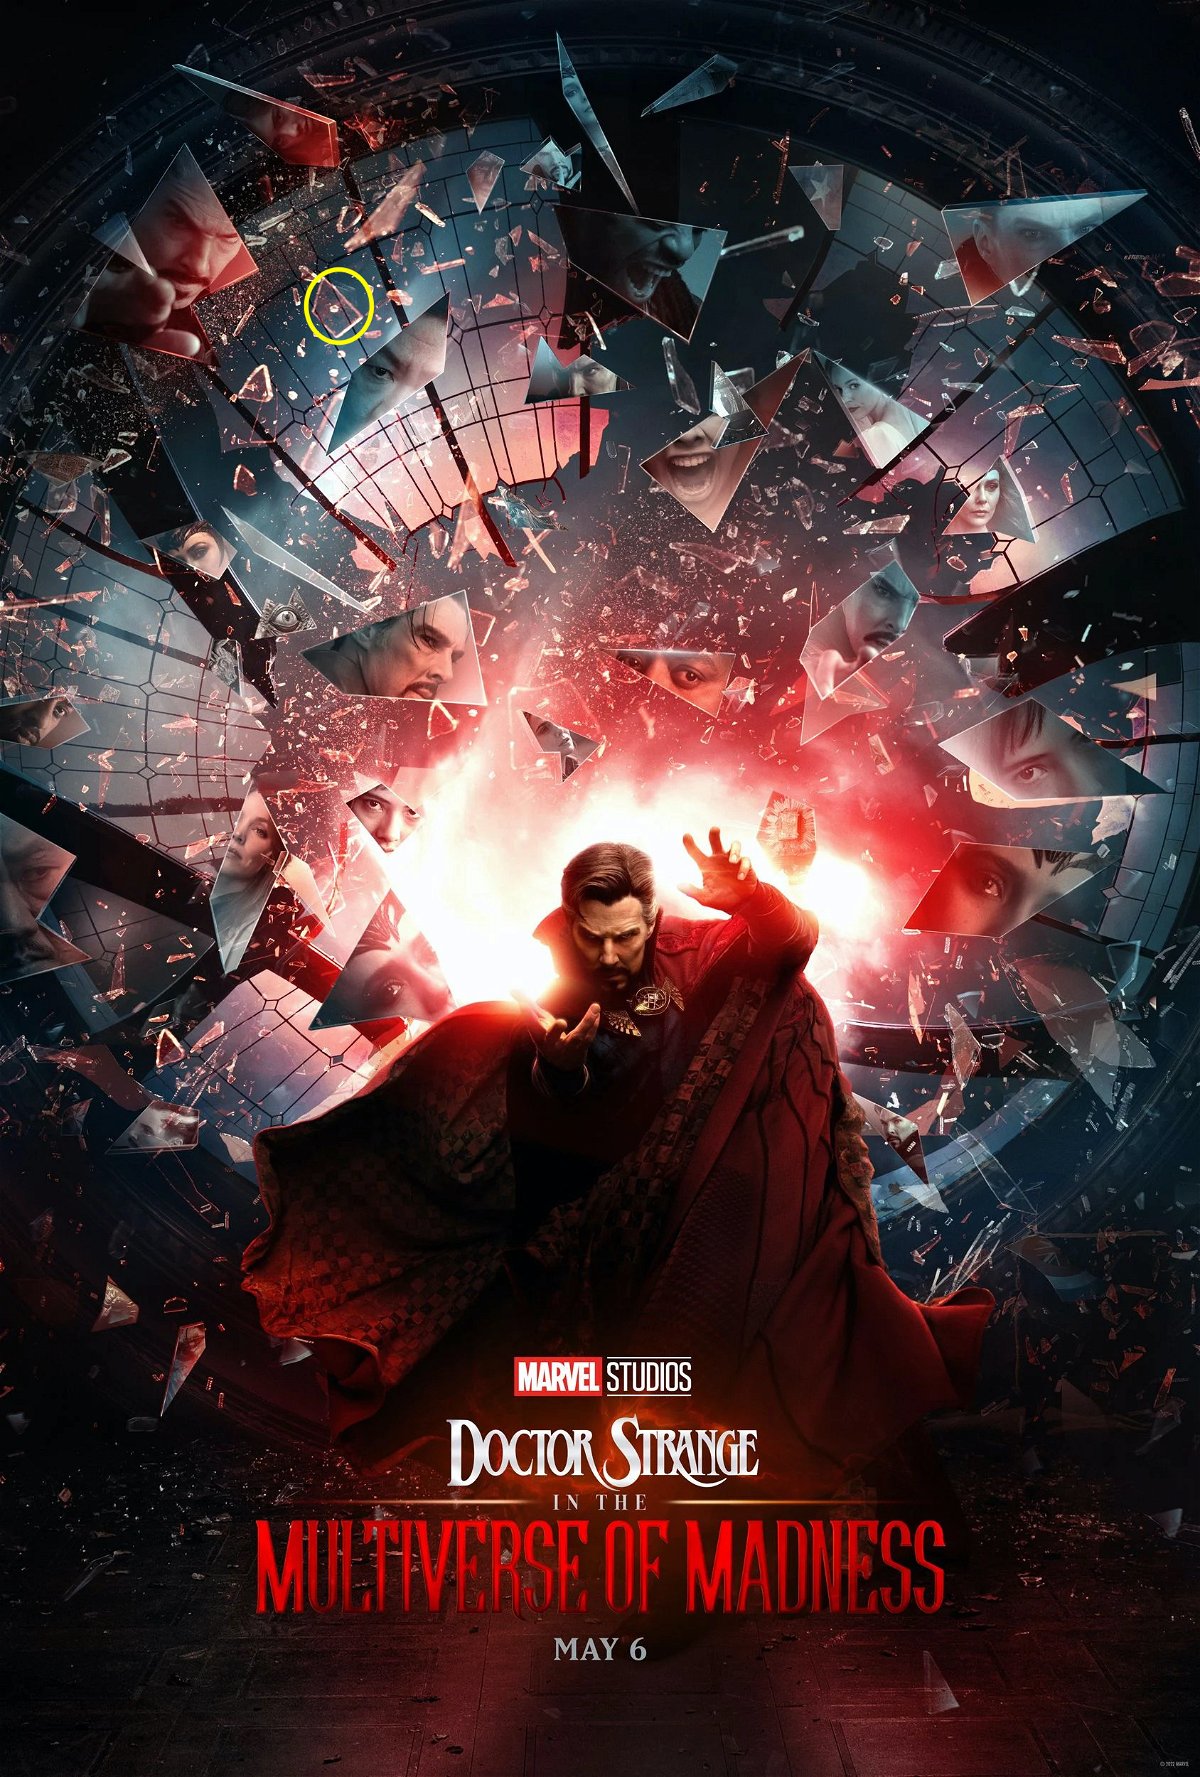 Η αφίσα του Doctor Strange 2 με τα θραύσματα γυαλιού